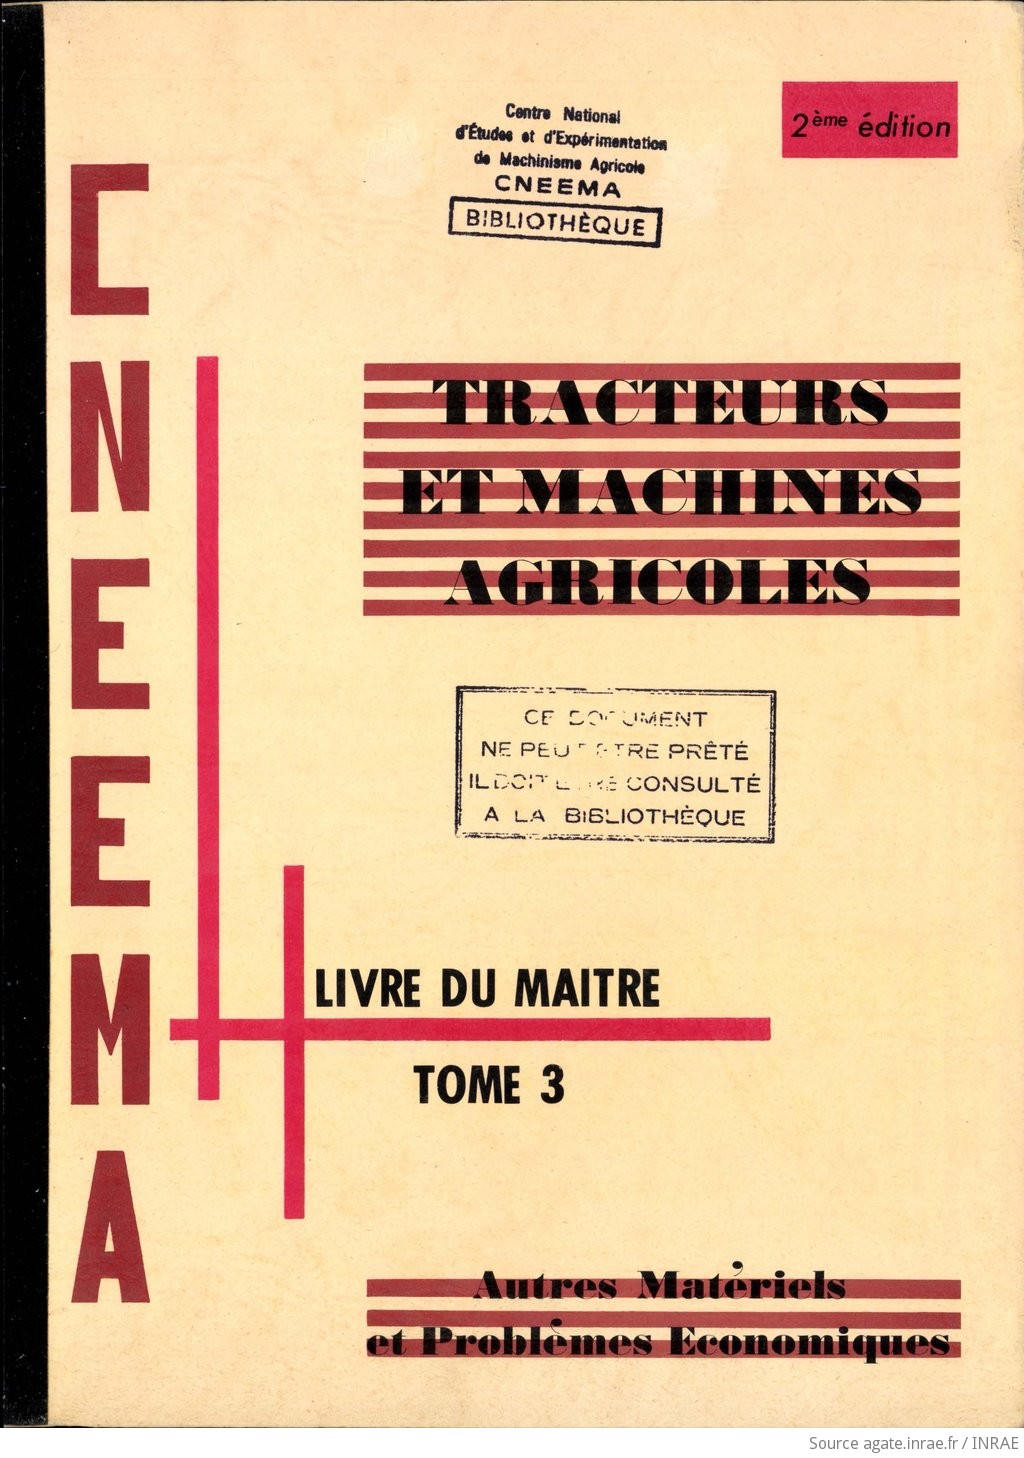 Livre du maître. Tome 3, Tracteurs et machines agricoles. Autres matériels et problèmes économiques, CNEEMA, 2e édition (1974).